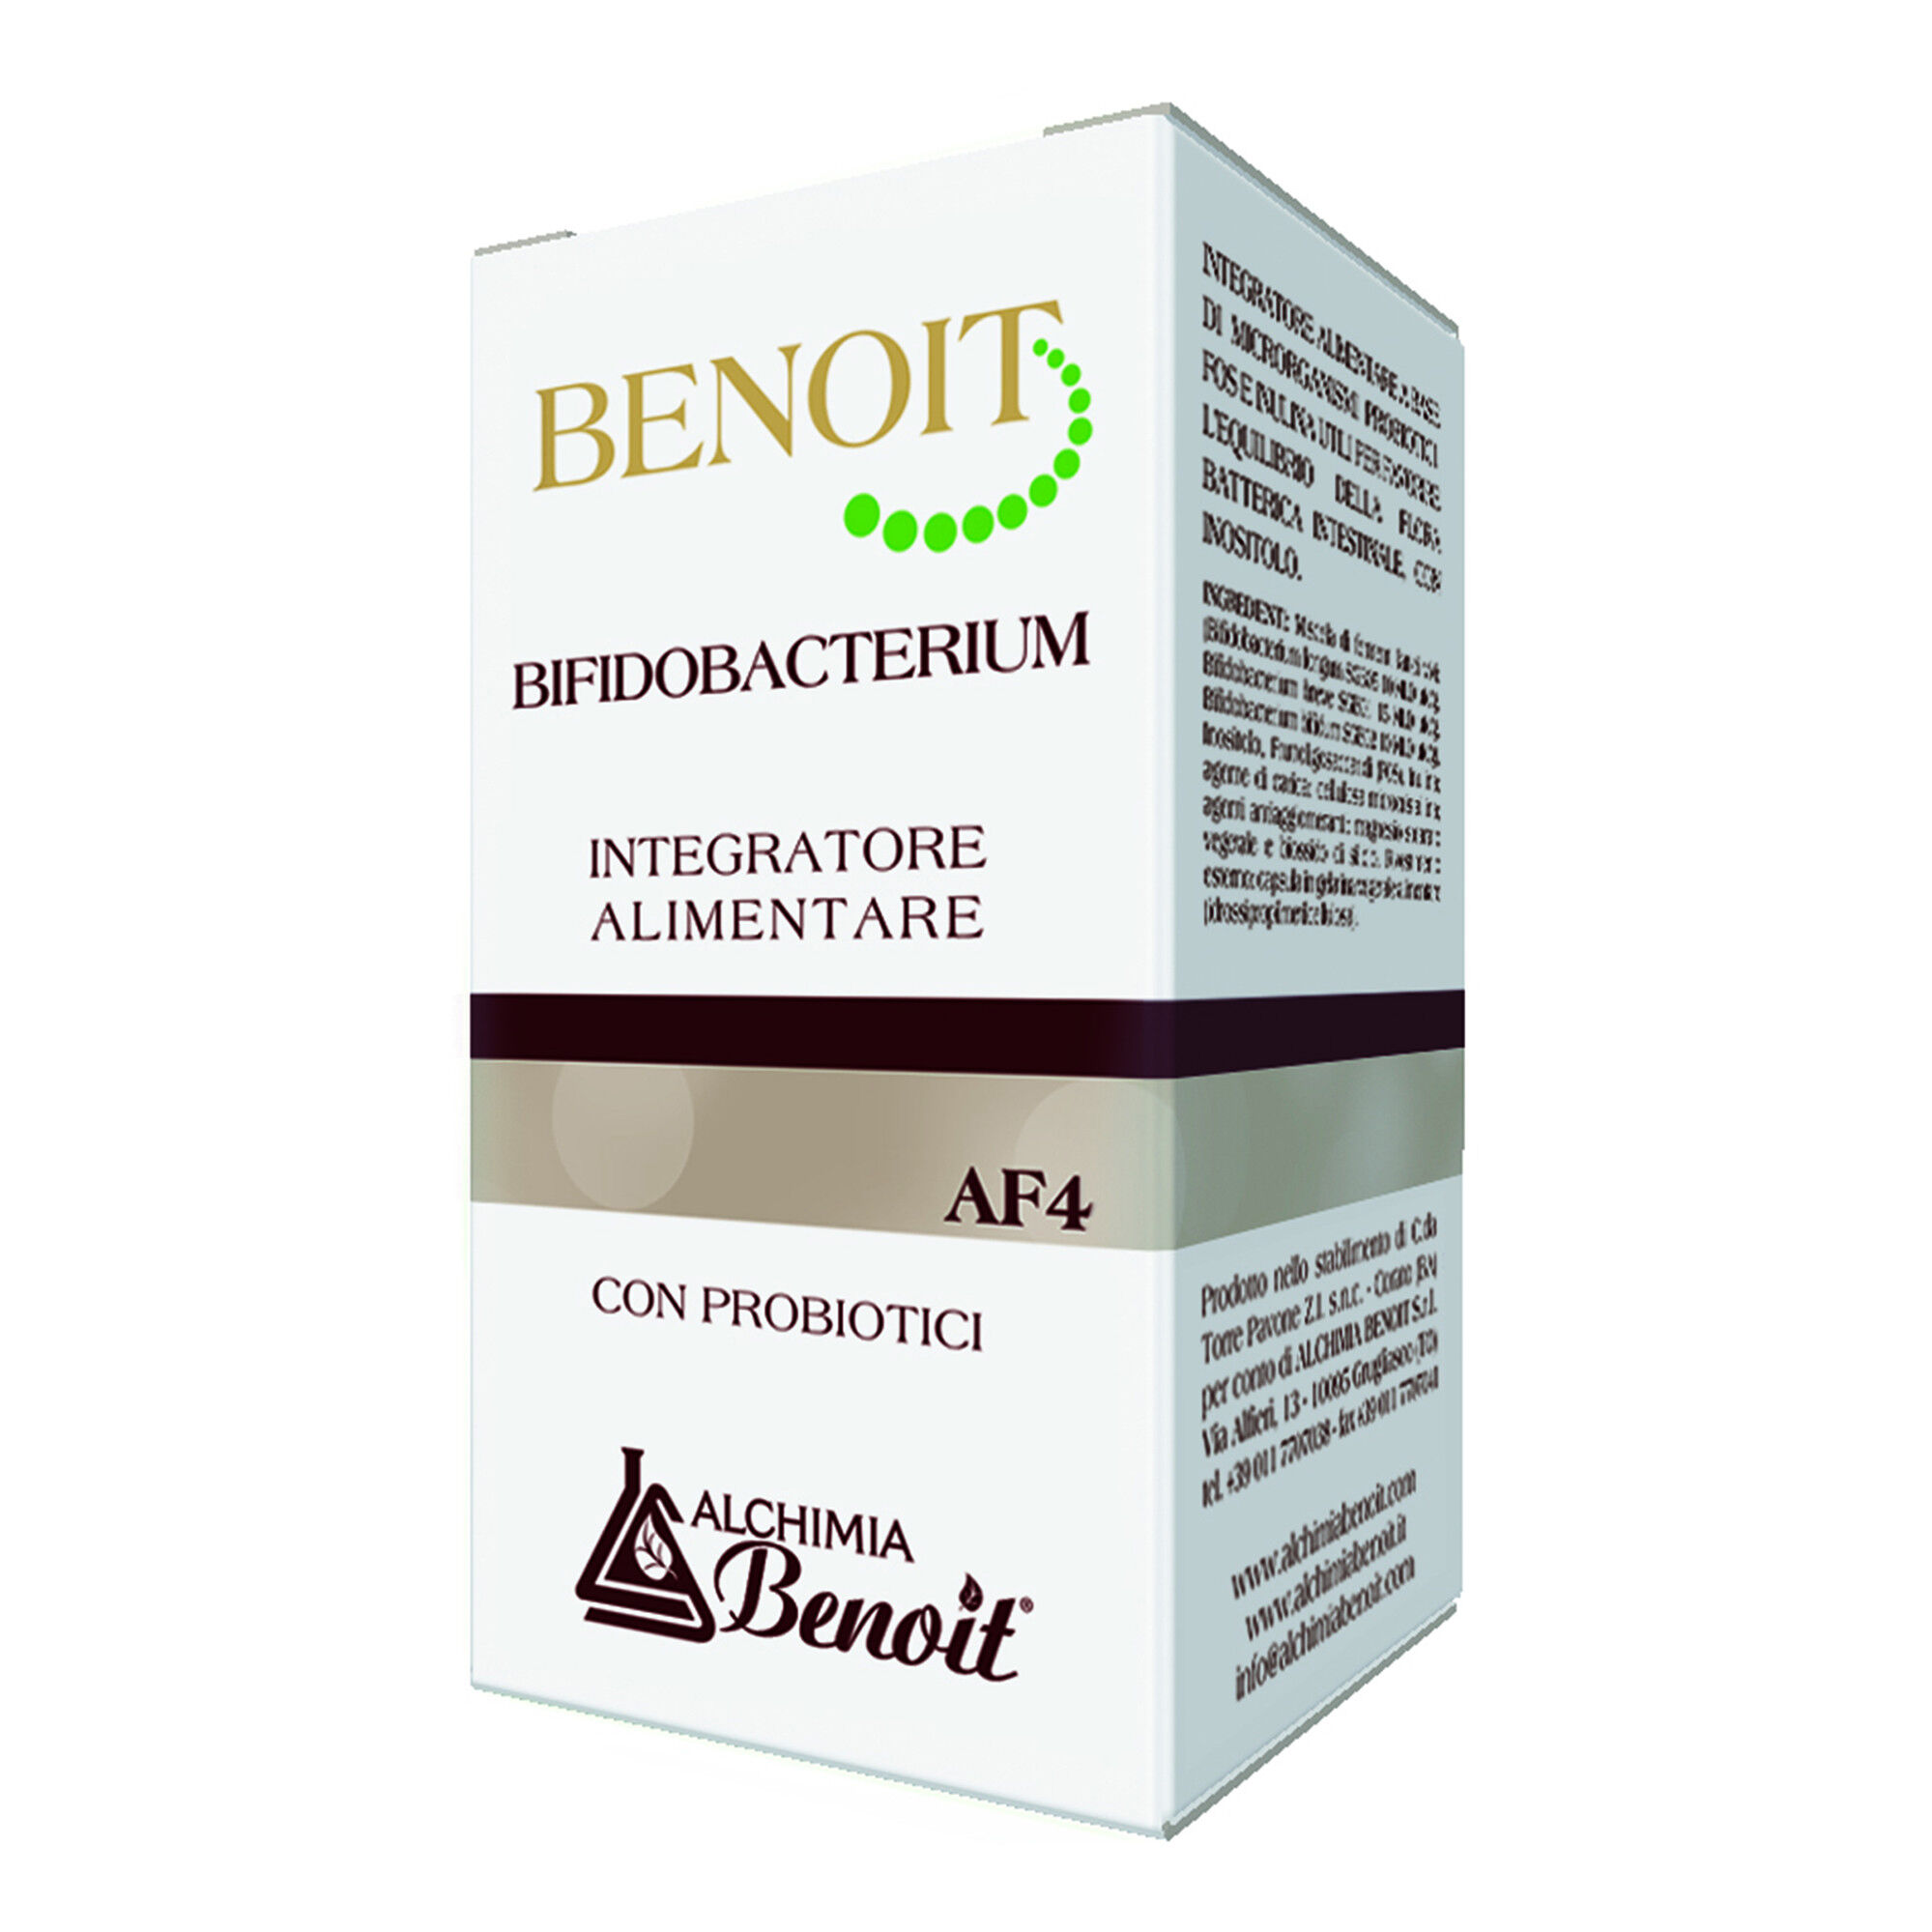 Alchimia Benoit Srl Benoit Bifidobacterium 30cps